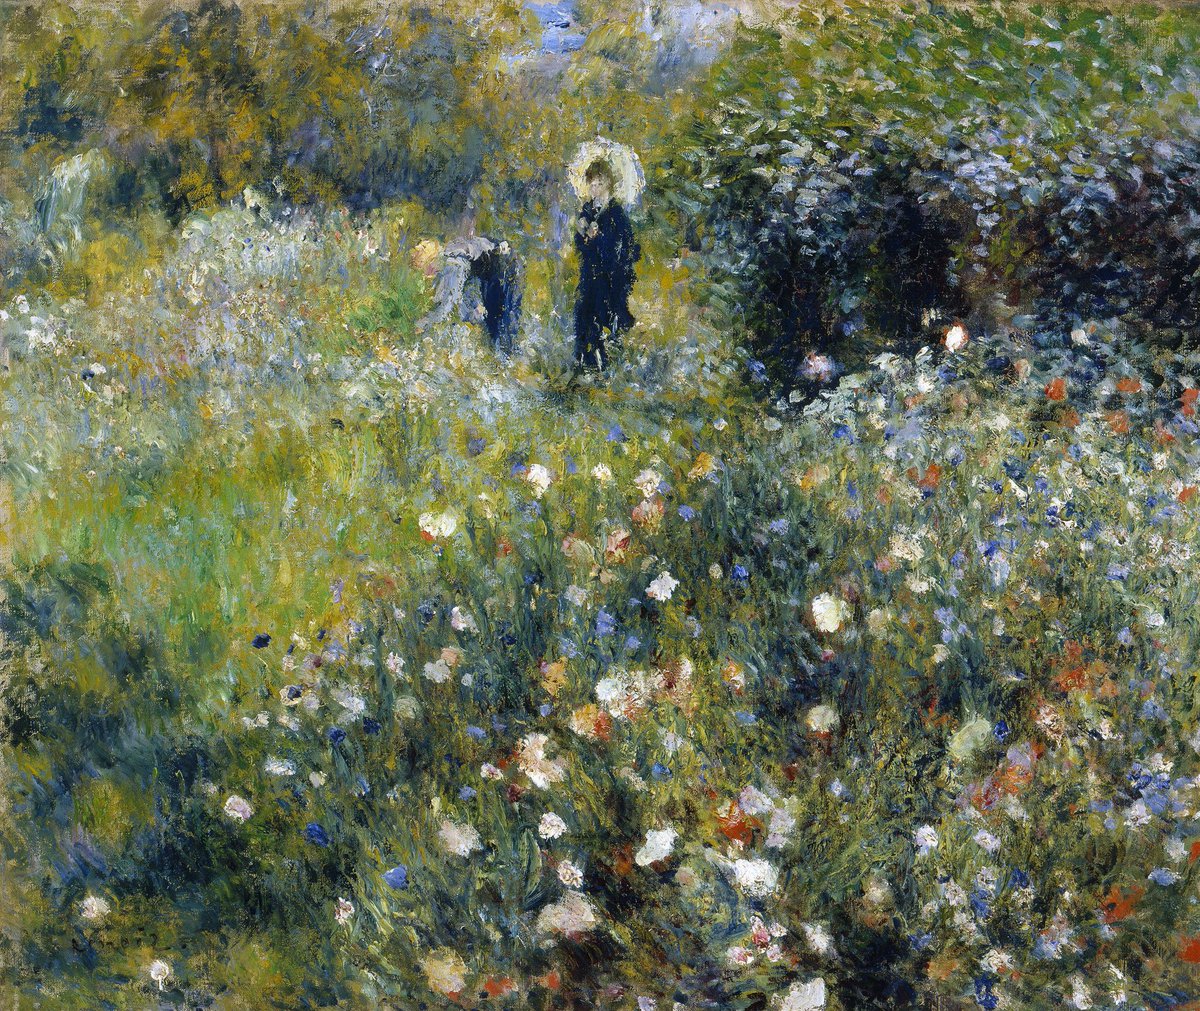 Renoir, Woman with a Parasol in a Garden